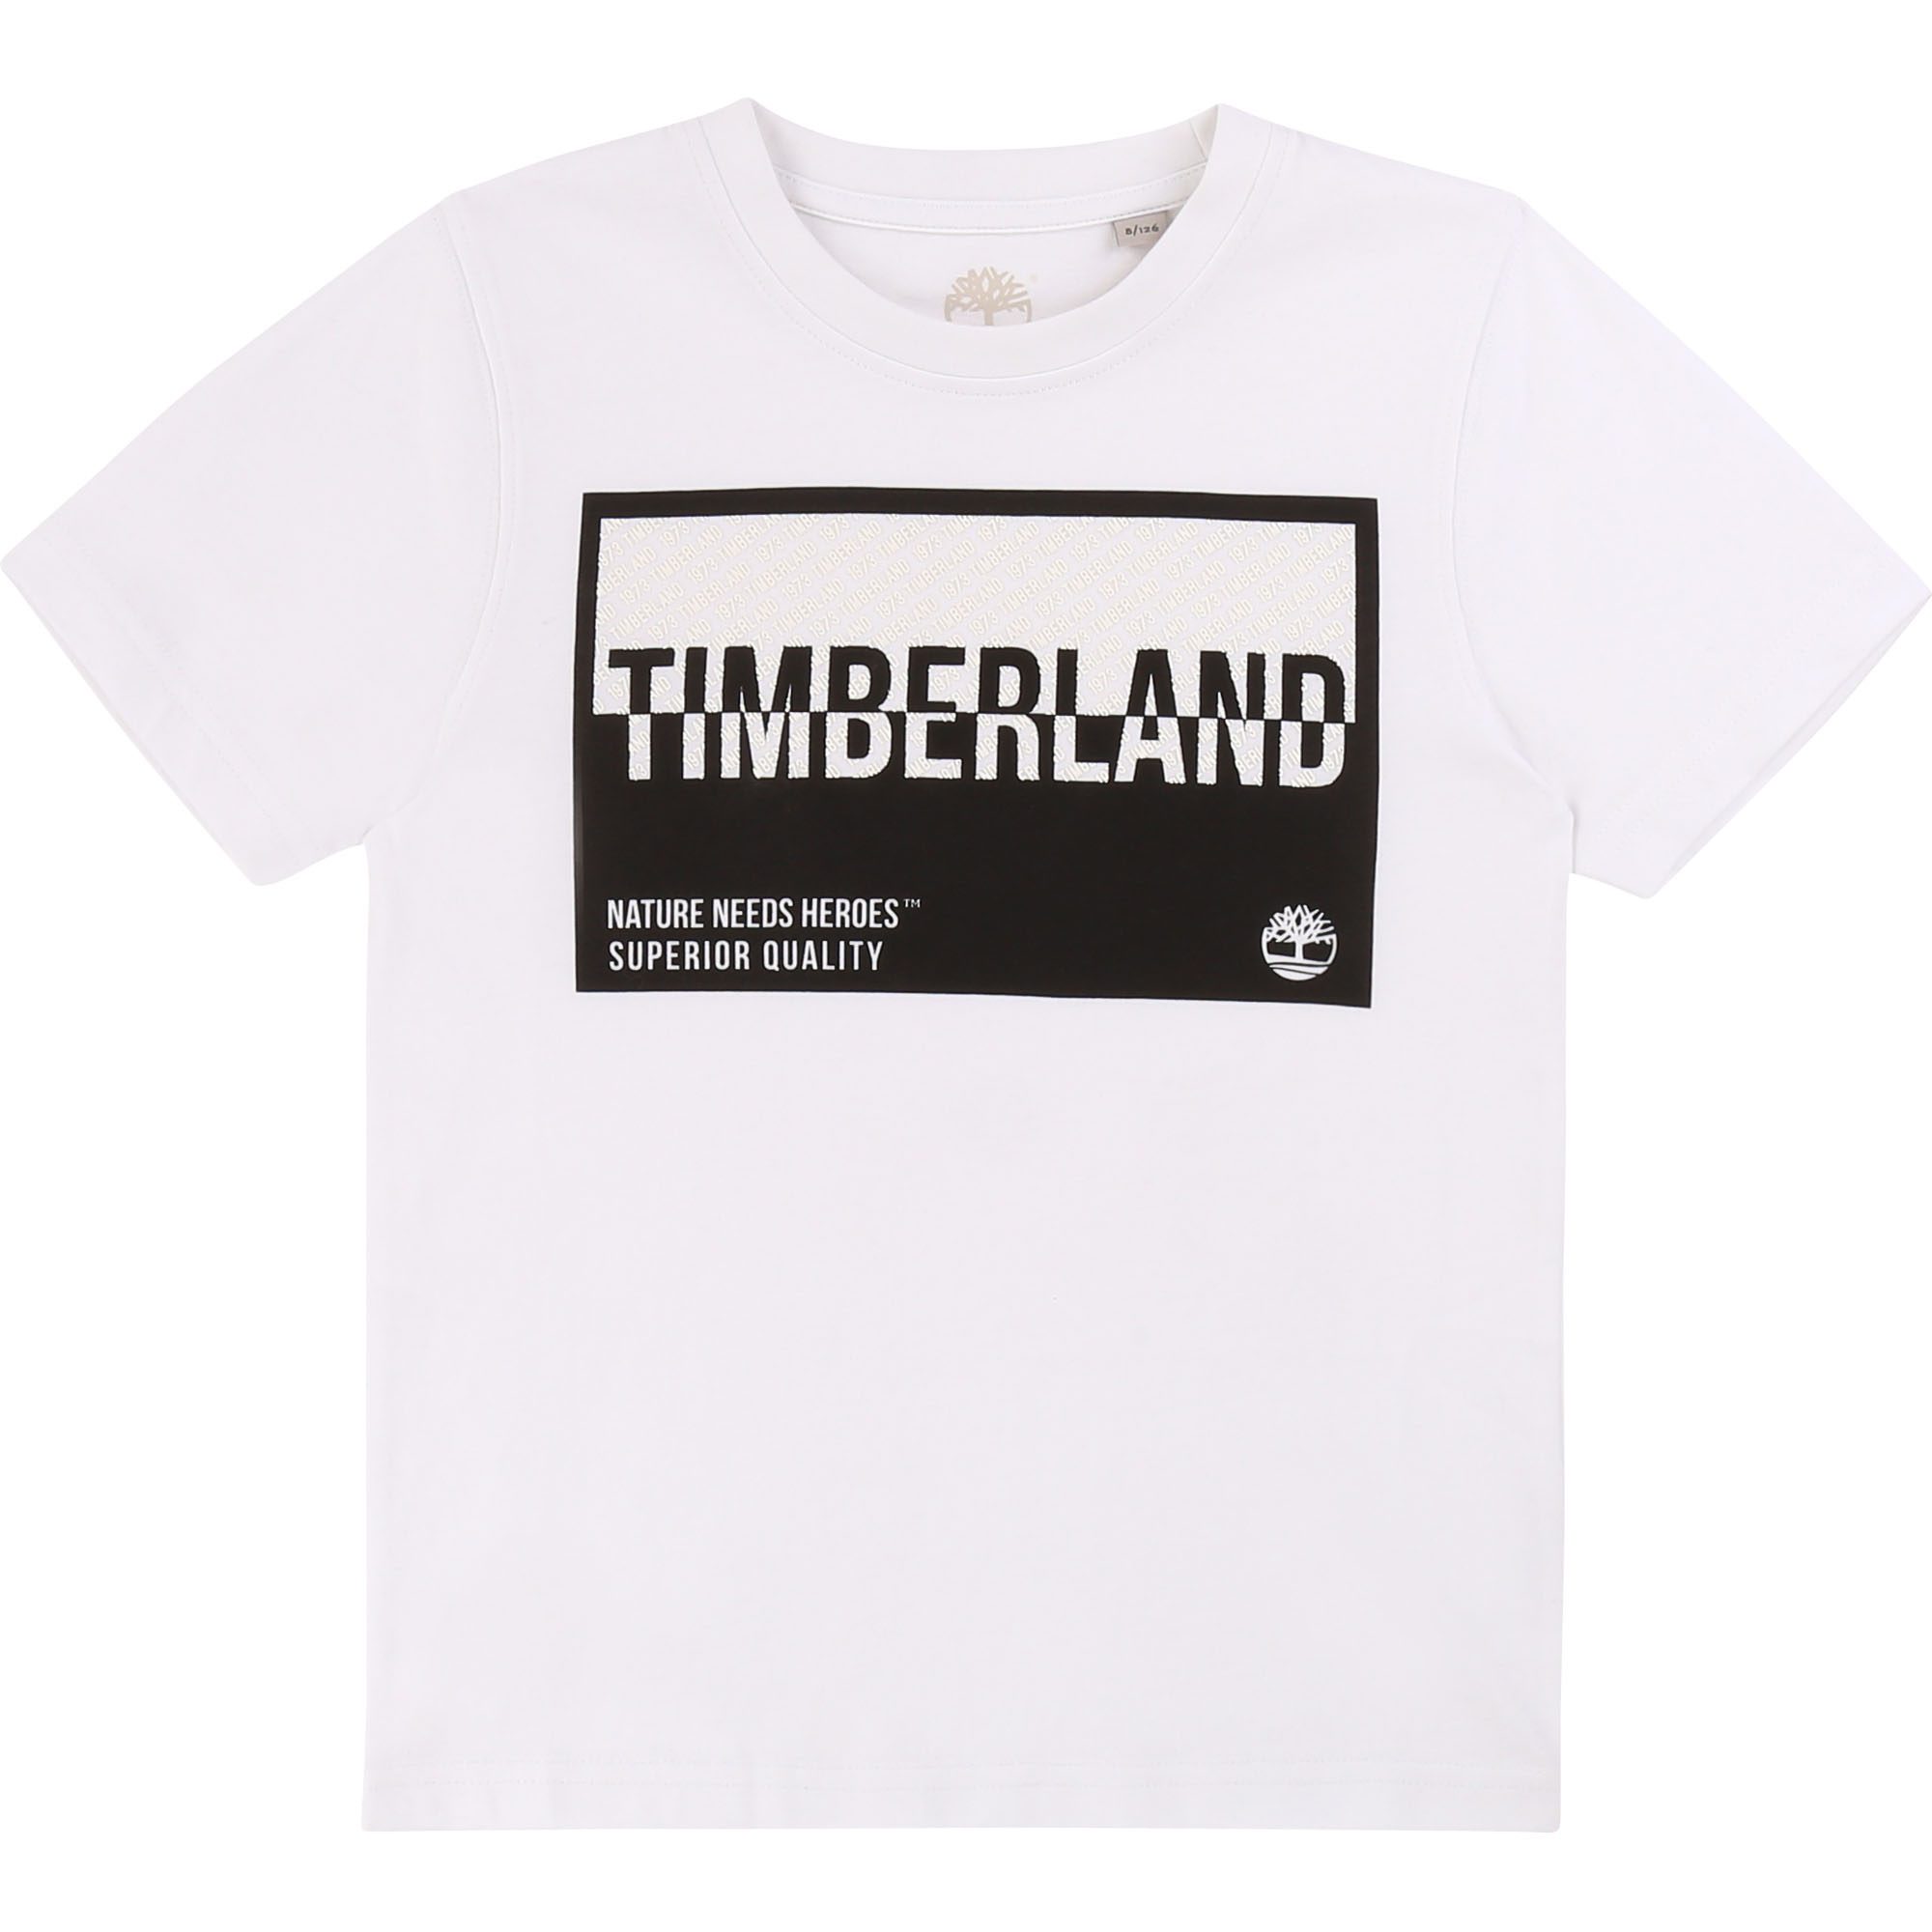 timberland white t shirt